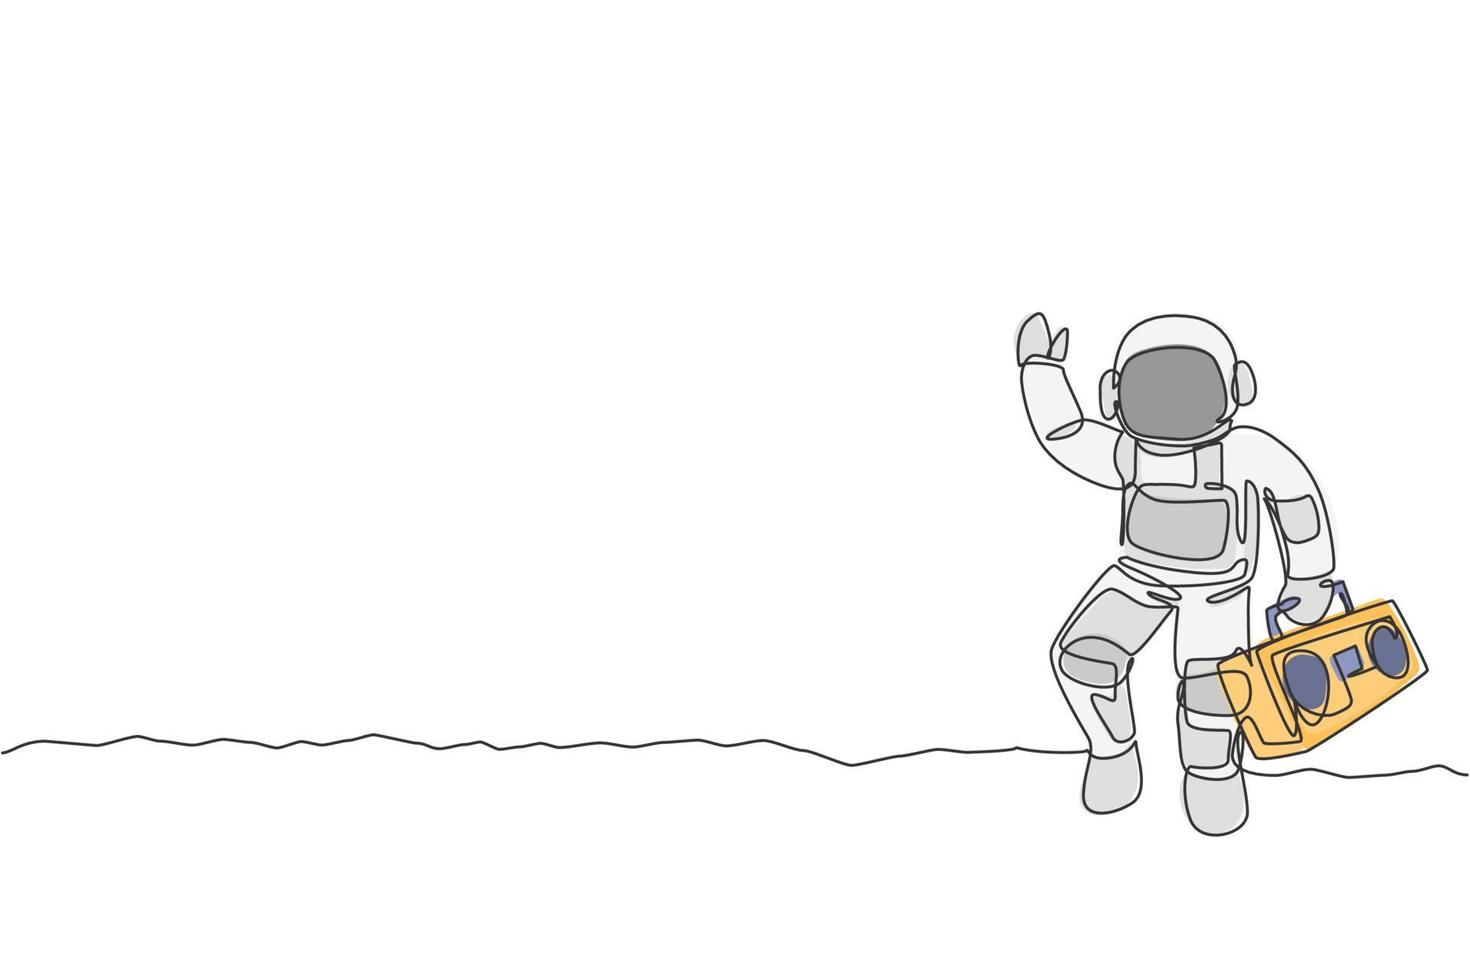 dibujo de línea continua única de astronauta caminando y sosteniendo una radio retro con la mano en la superficie de la luna. concepto de concierto de música del espacio exterior. Ilustración de vector de diseño gráfico de dibujo de una línea de moda